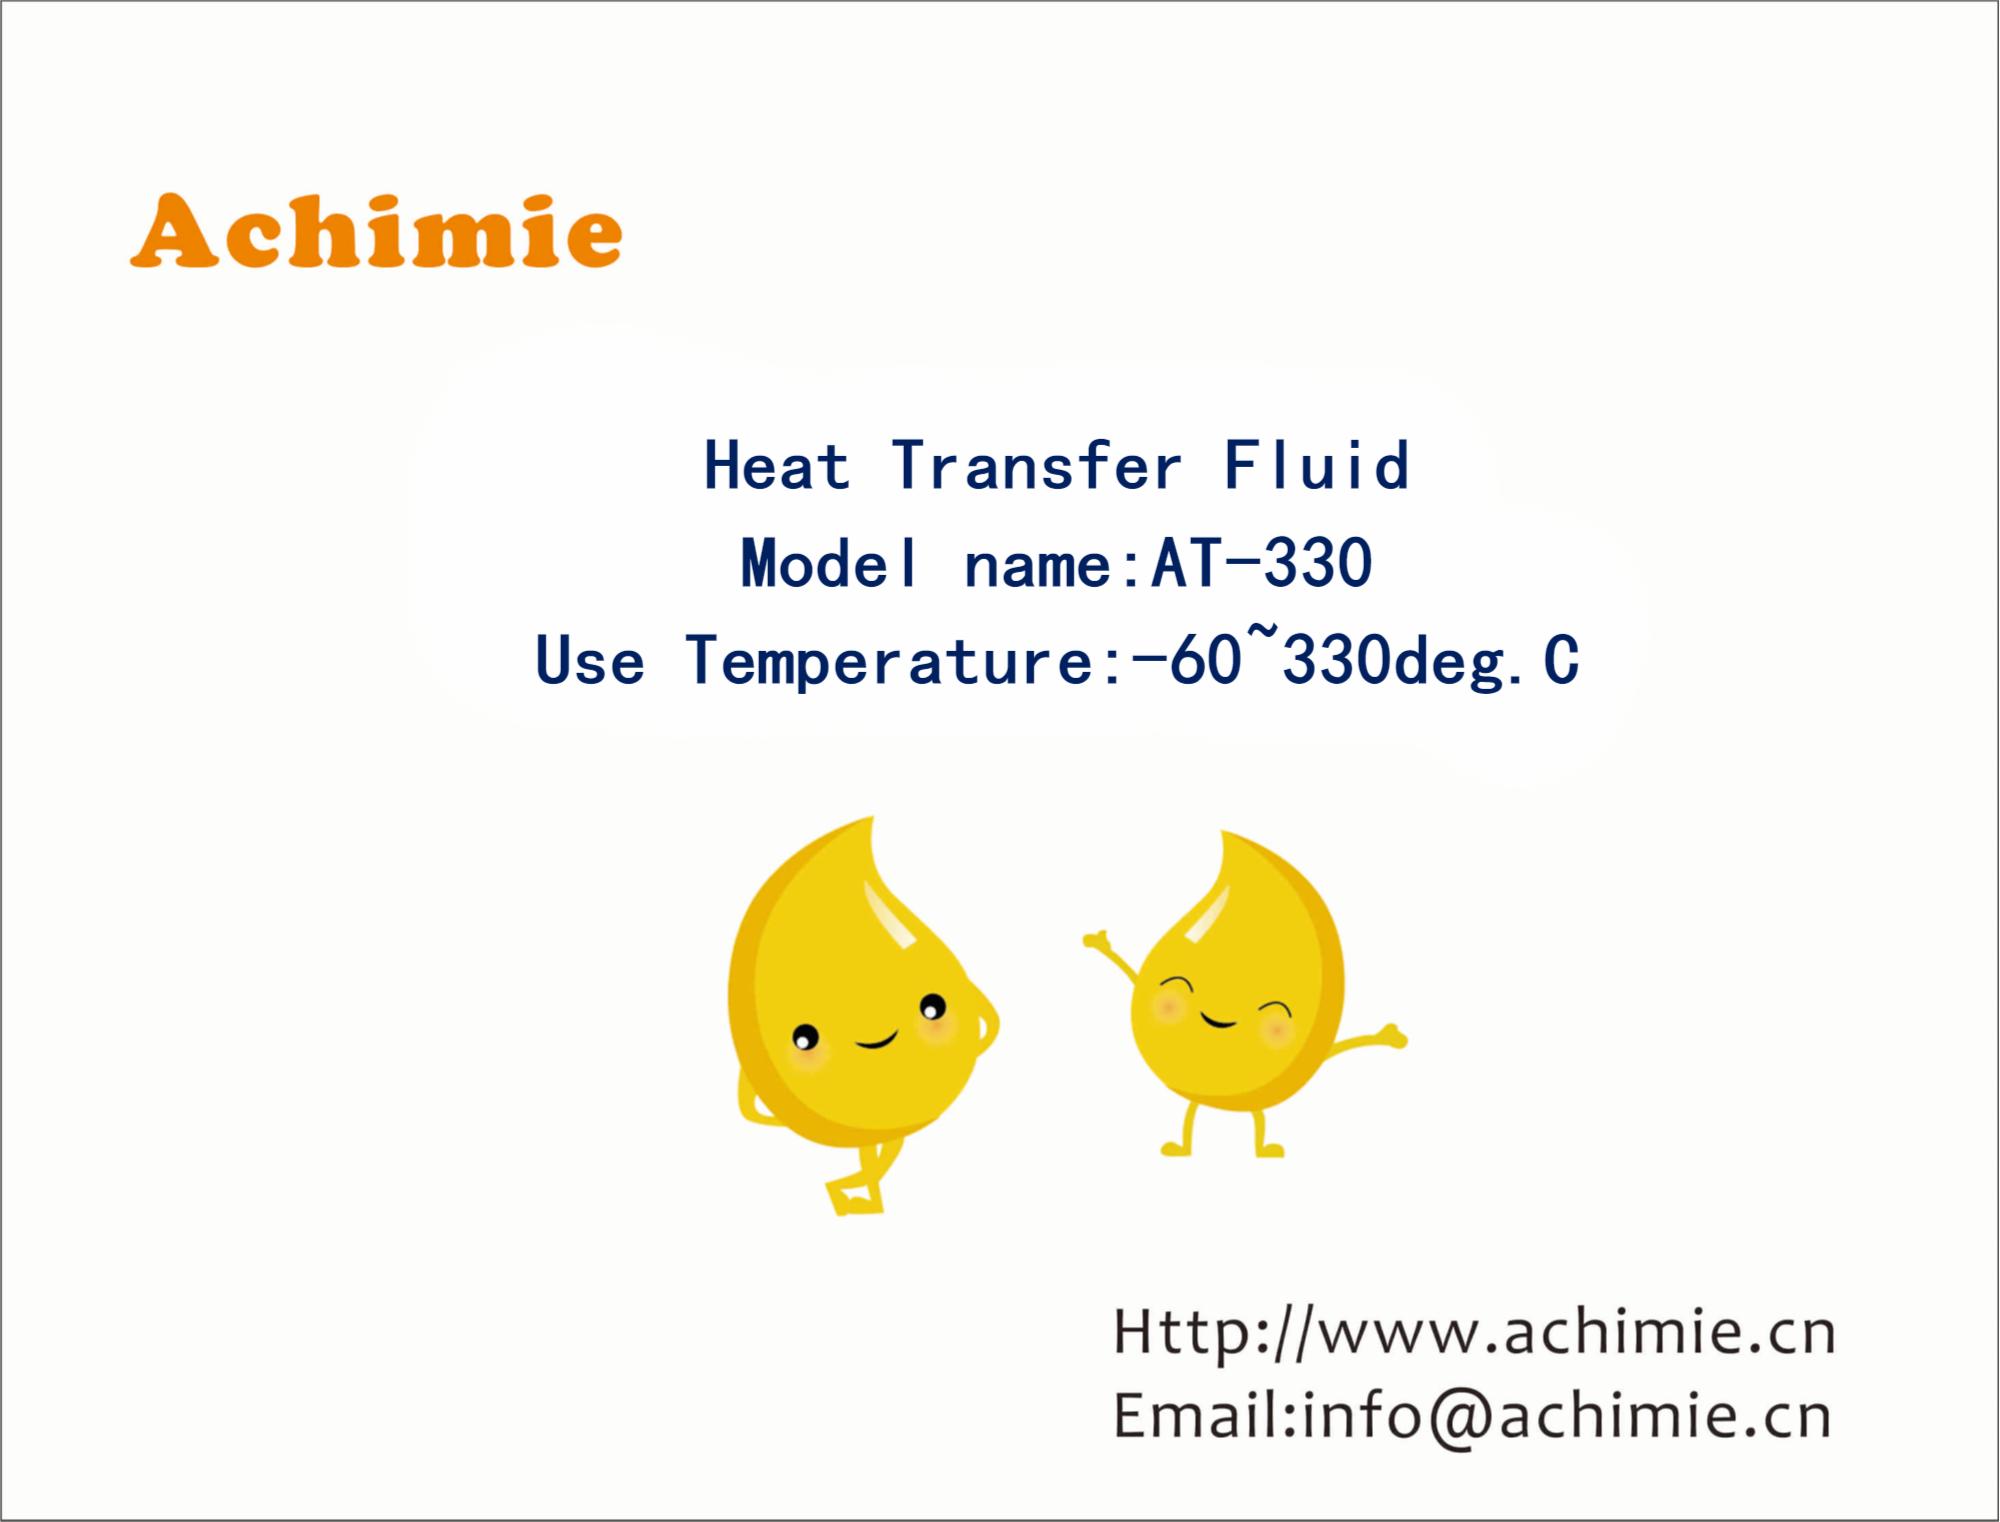 AT-330 Heat Transfer Fluid